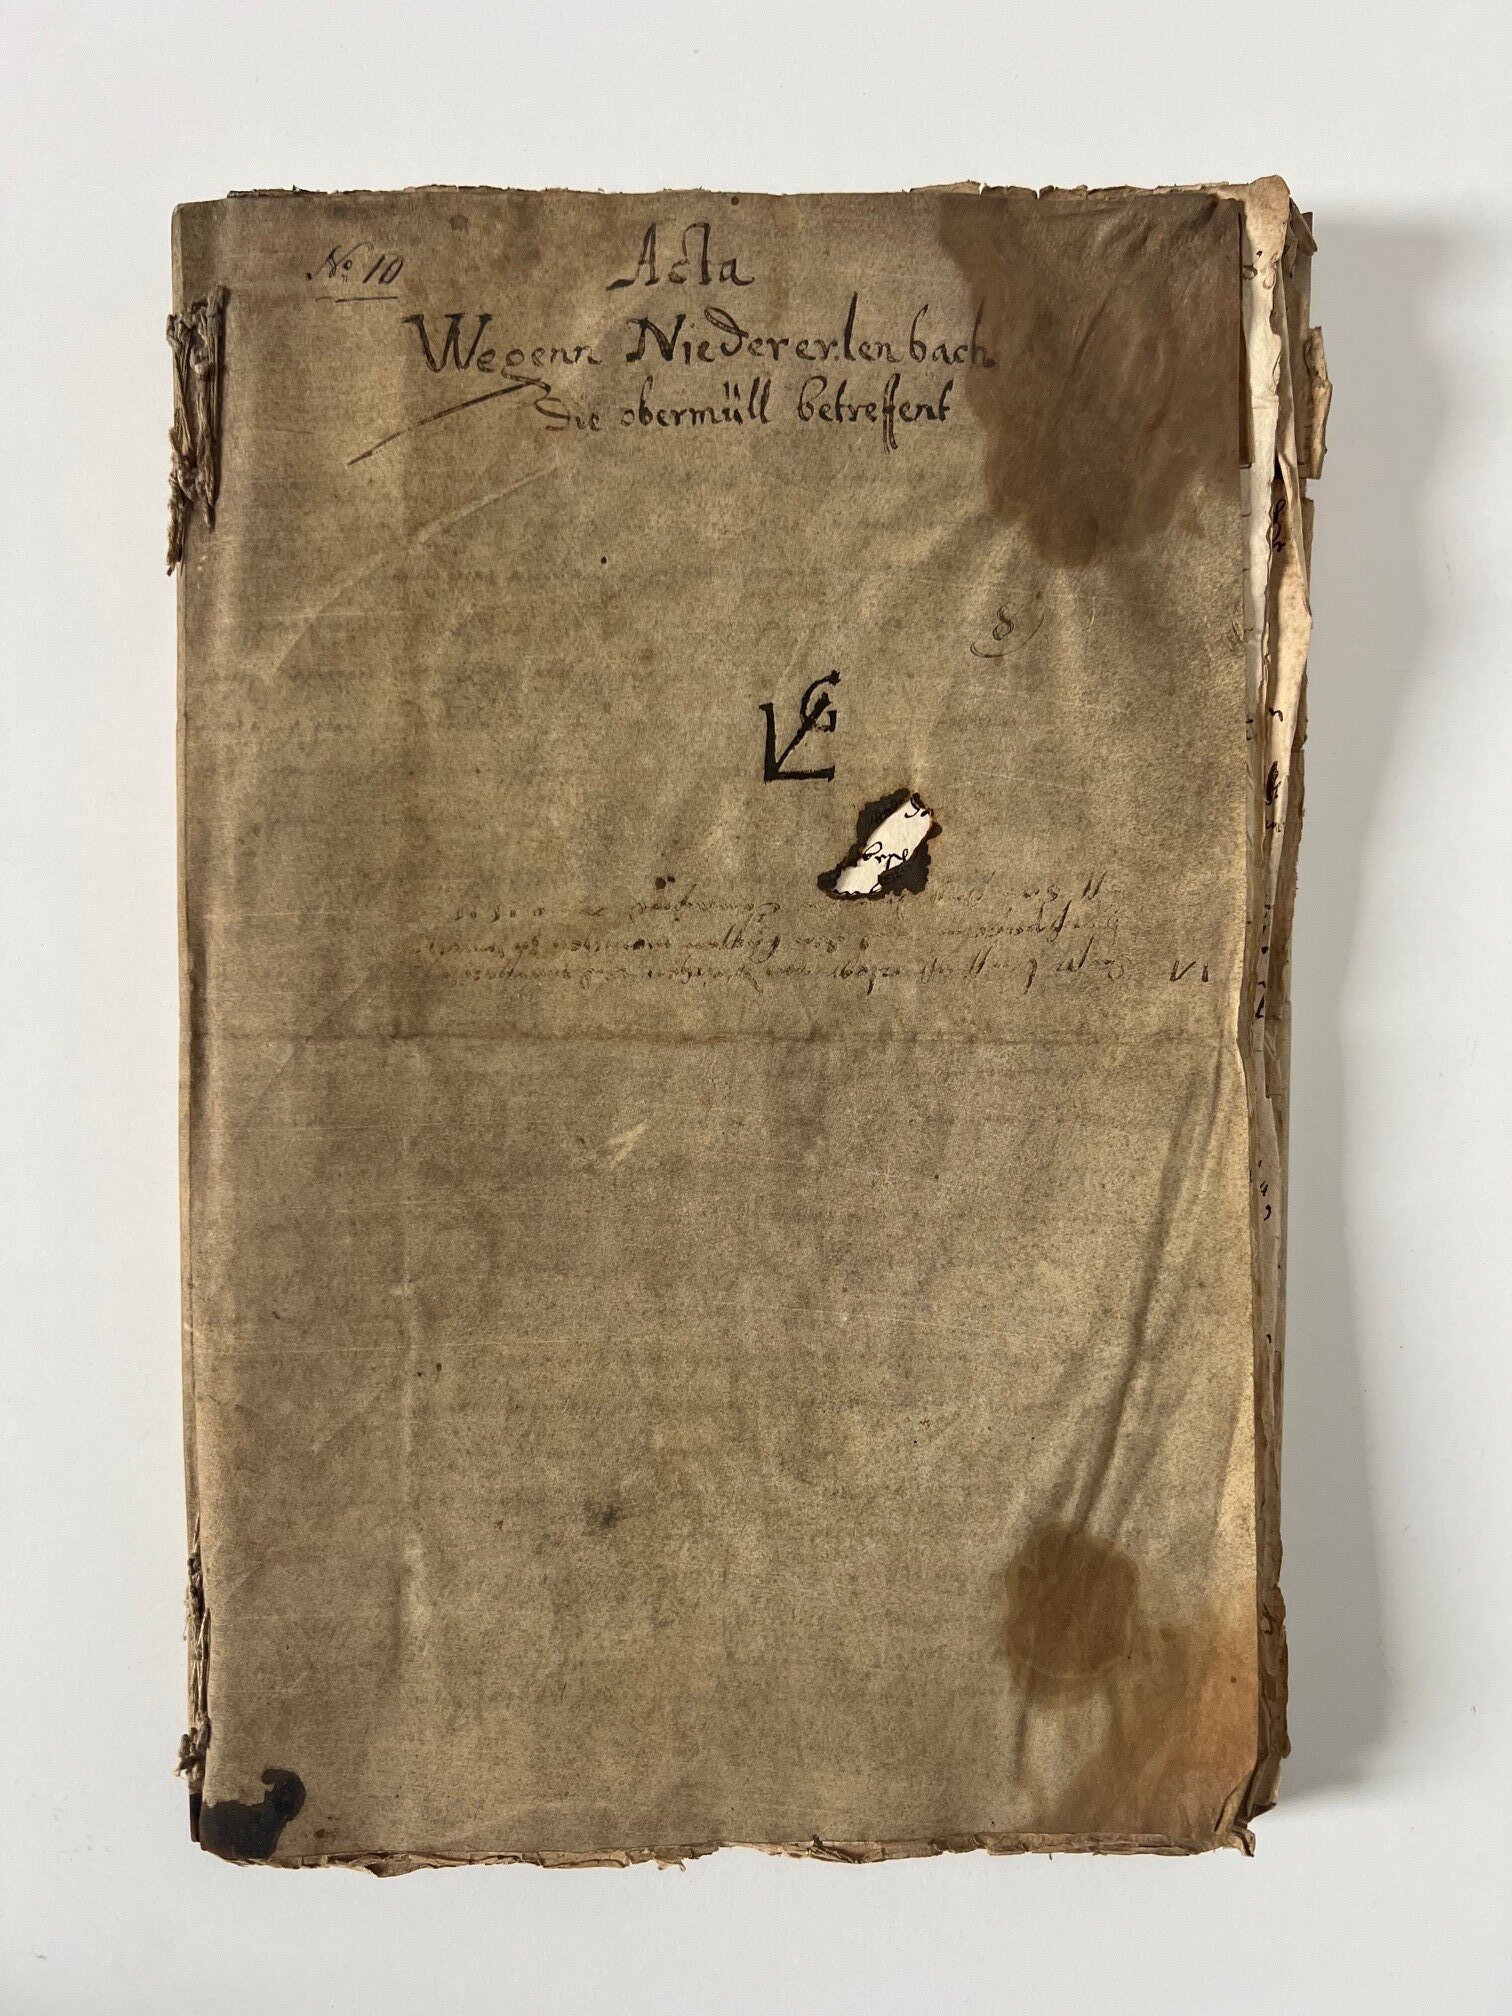 Handschrift, Acta wegen Niedererlenbach die obermüll betreffend, Frankfurt, 1610-1617. (Taunus-Rhein-Main - Regionalgeschichtliche Sammlung Dr. Stefan Naas CC BY-NC-SA)